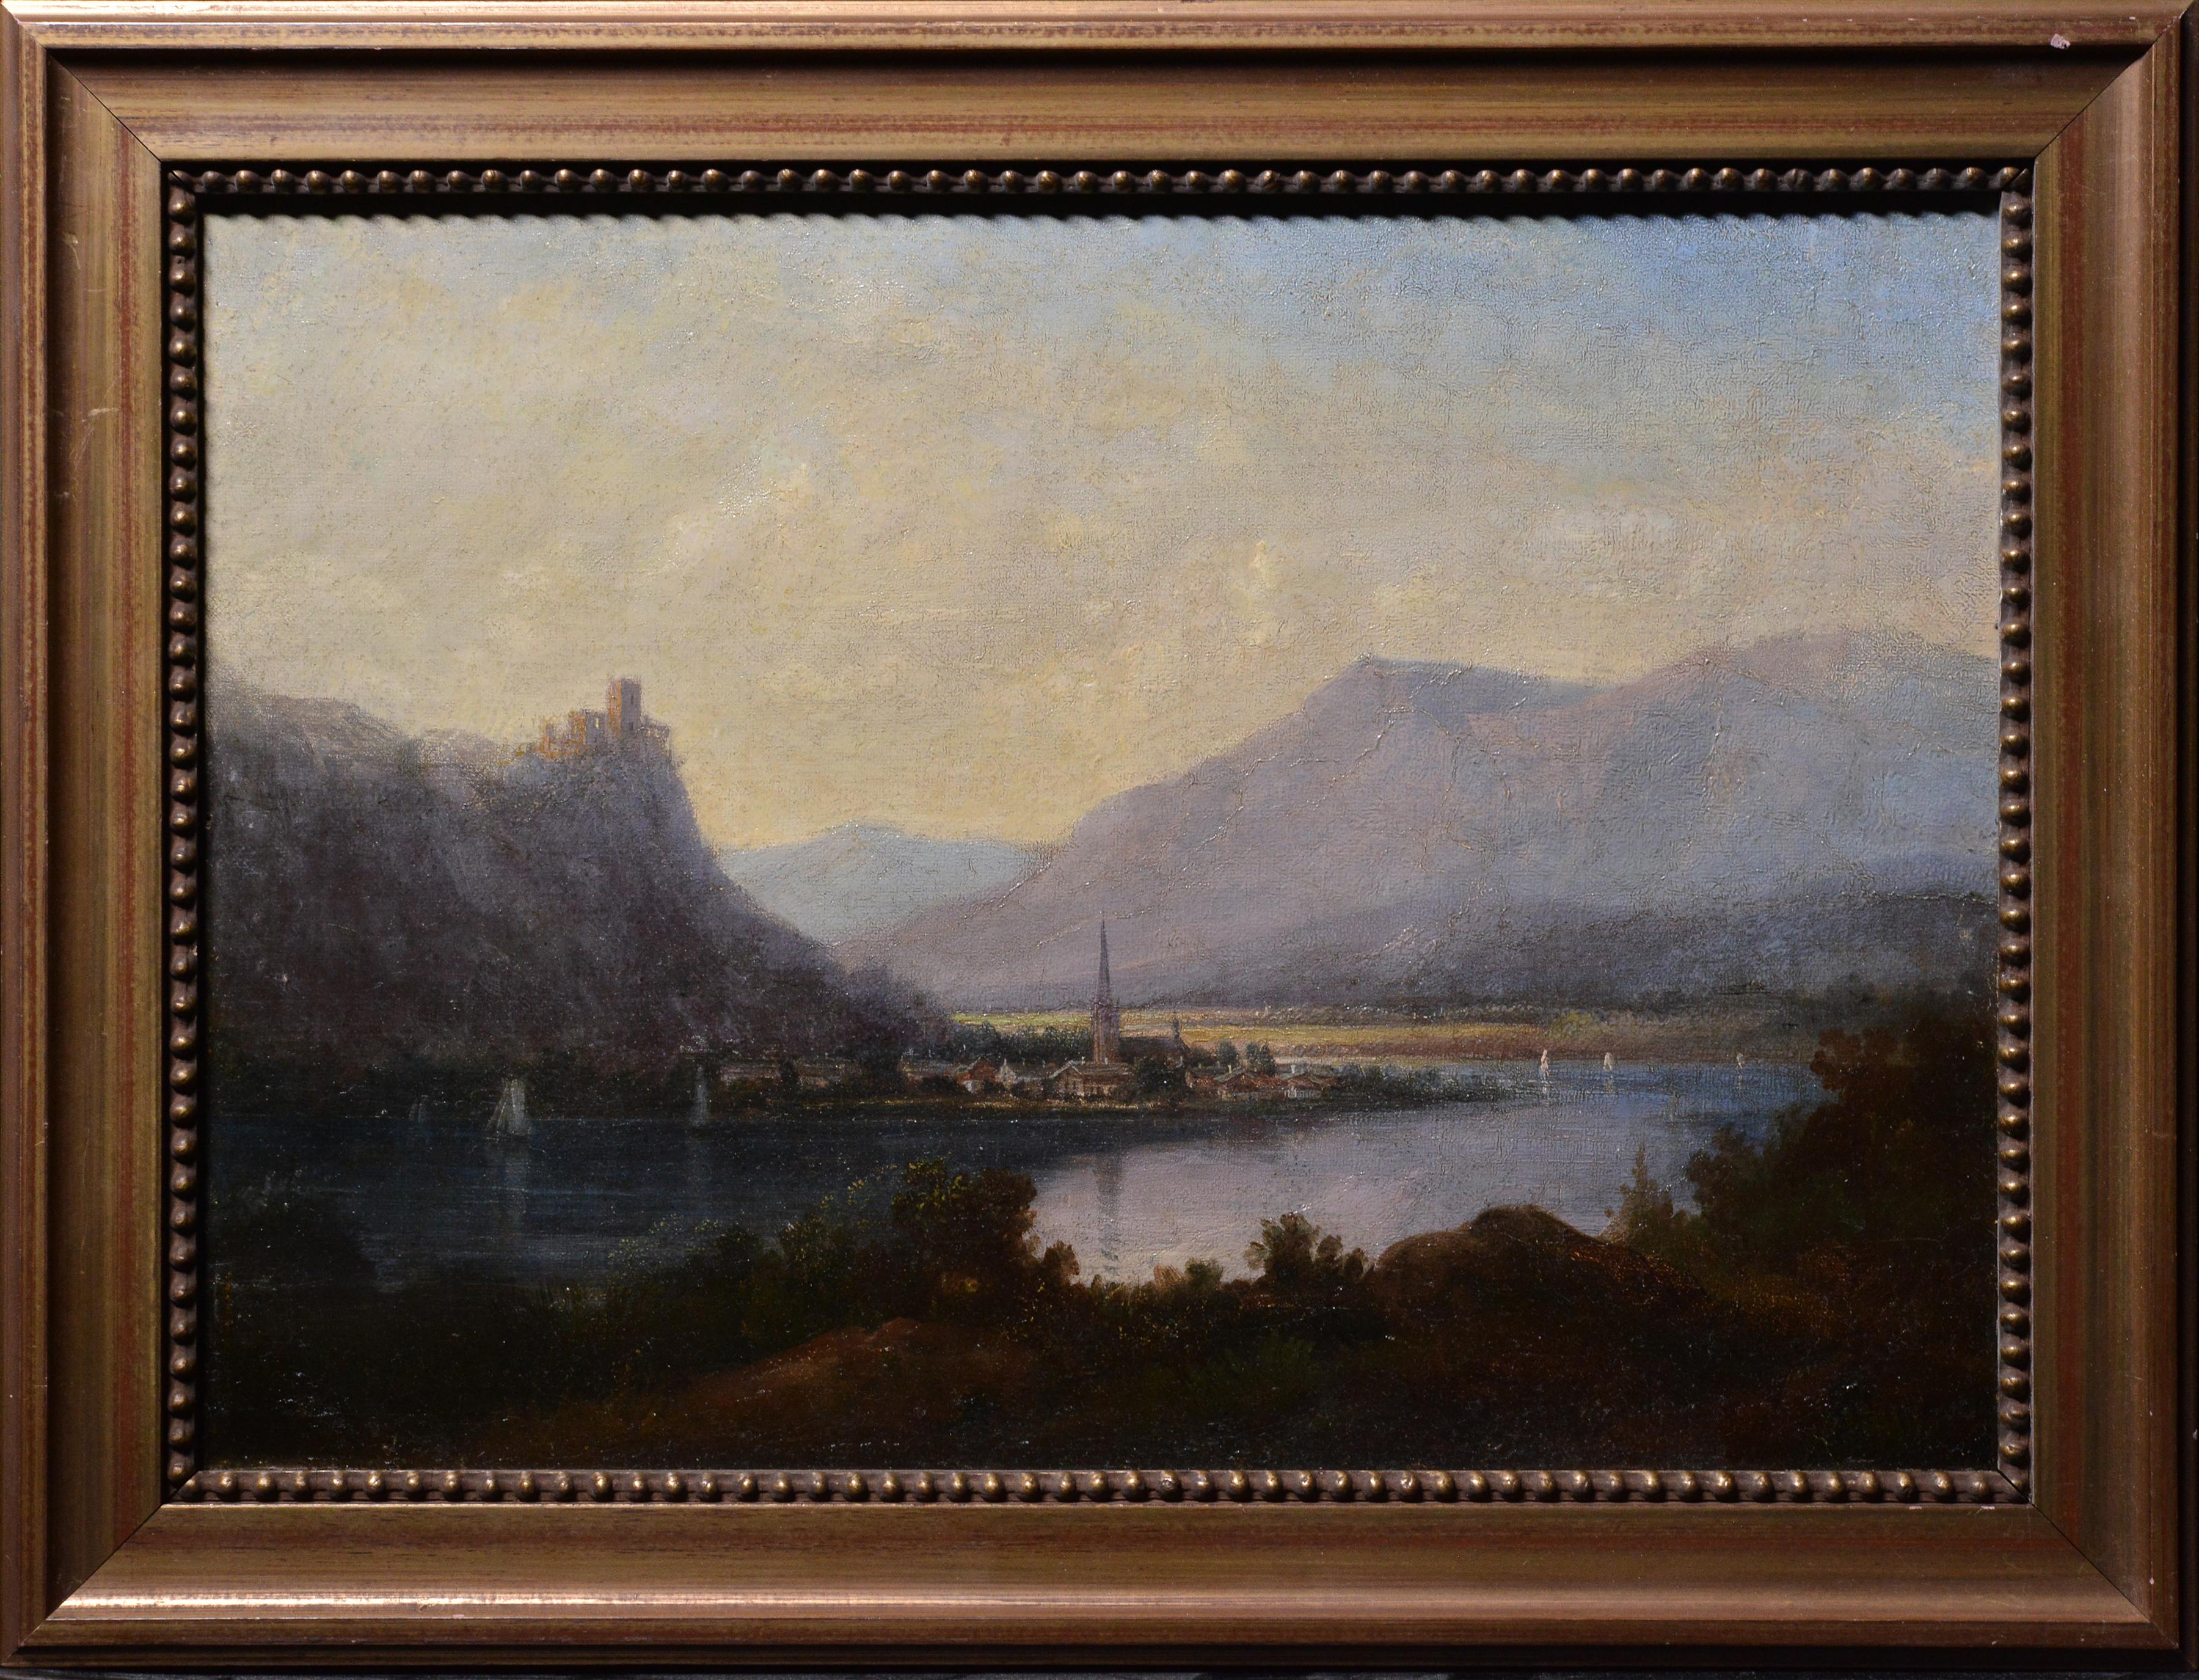 Landscape Painting Unknown - Paysage de vallée alpine avec château sur roche et ville à River Bend 19ème siècle